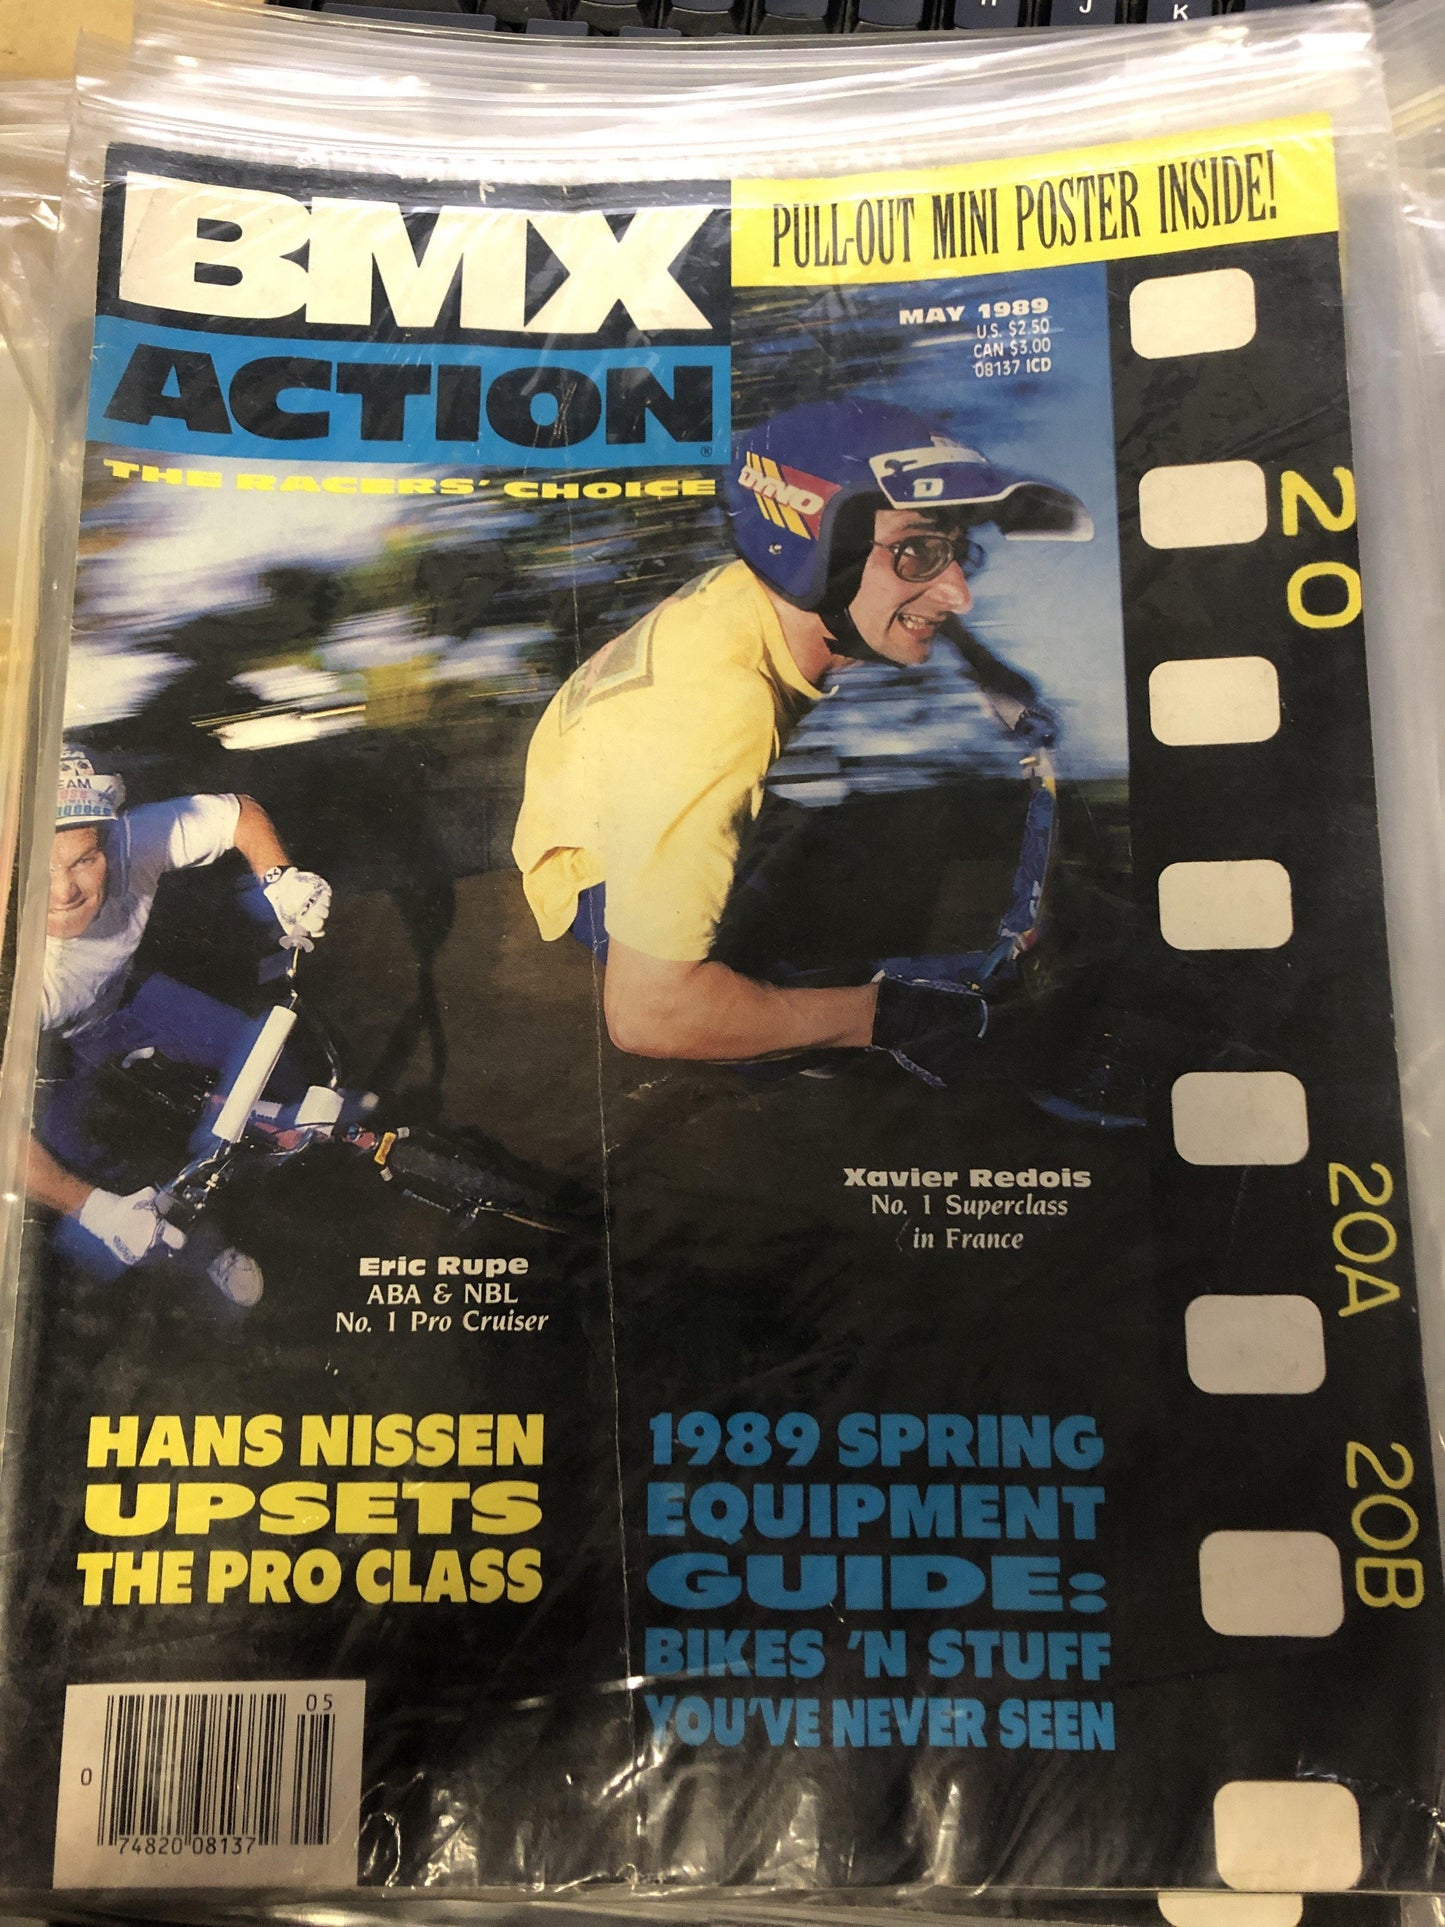 BMX Action magazine back issues 1989 - POWERS BMX